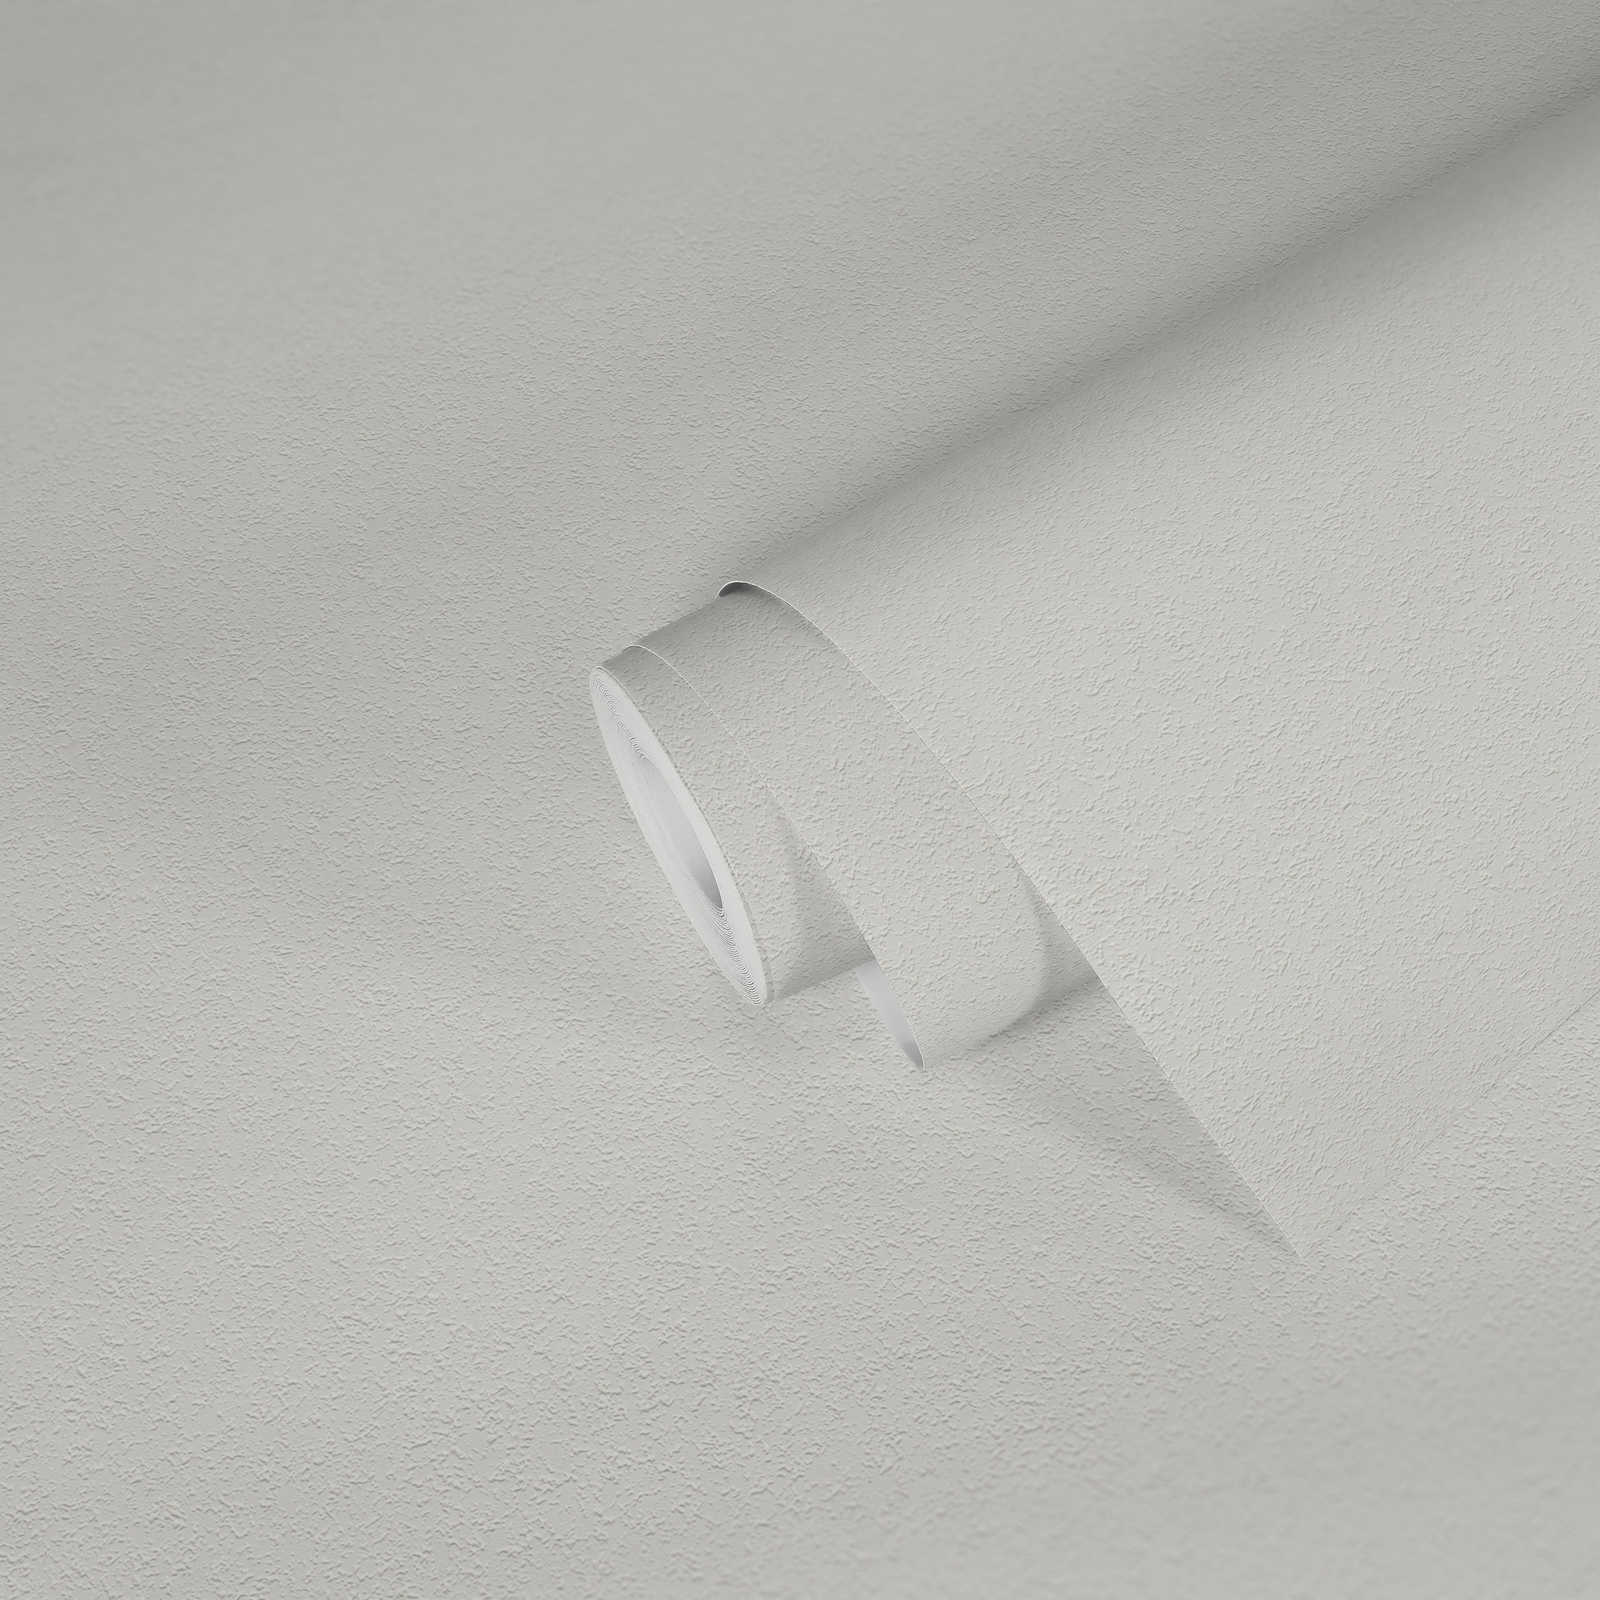             Verfbaar behangpapier met fijne zandstructuur - wit
        